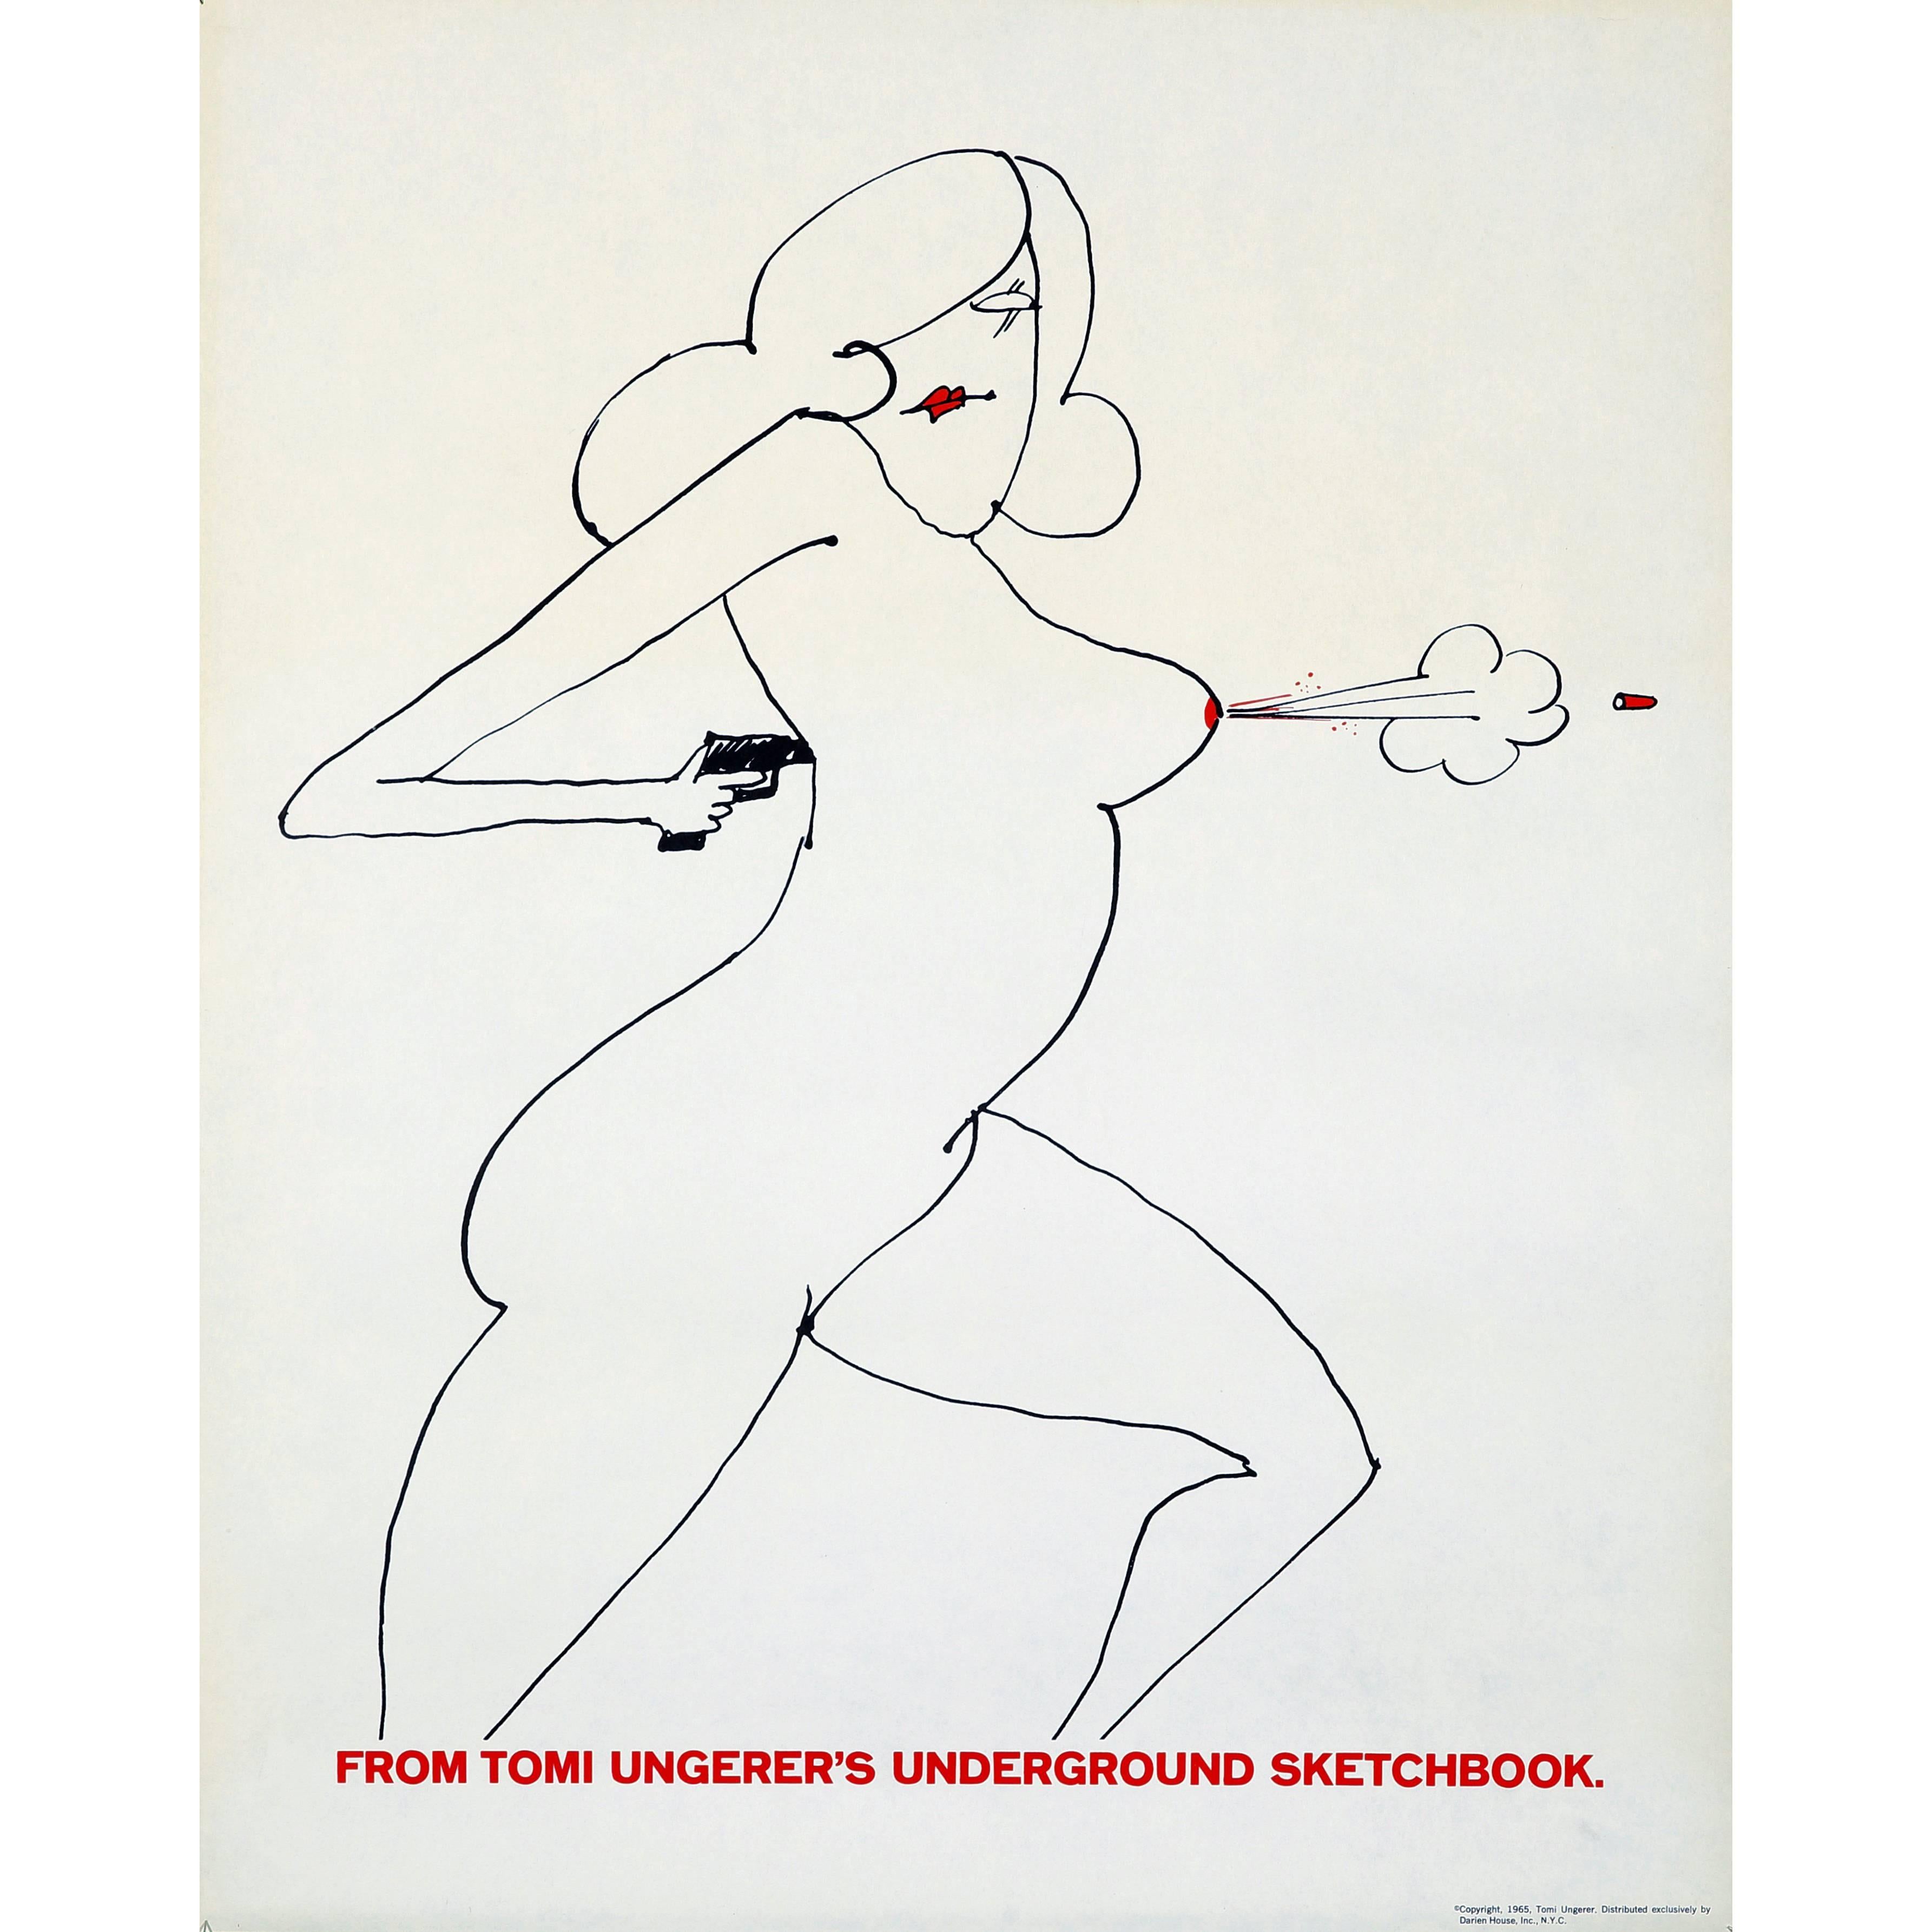 Tomi Ungerer Boob Gun Poster from Underground Sketchbook